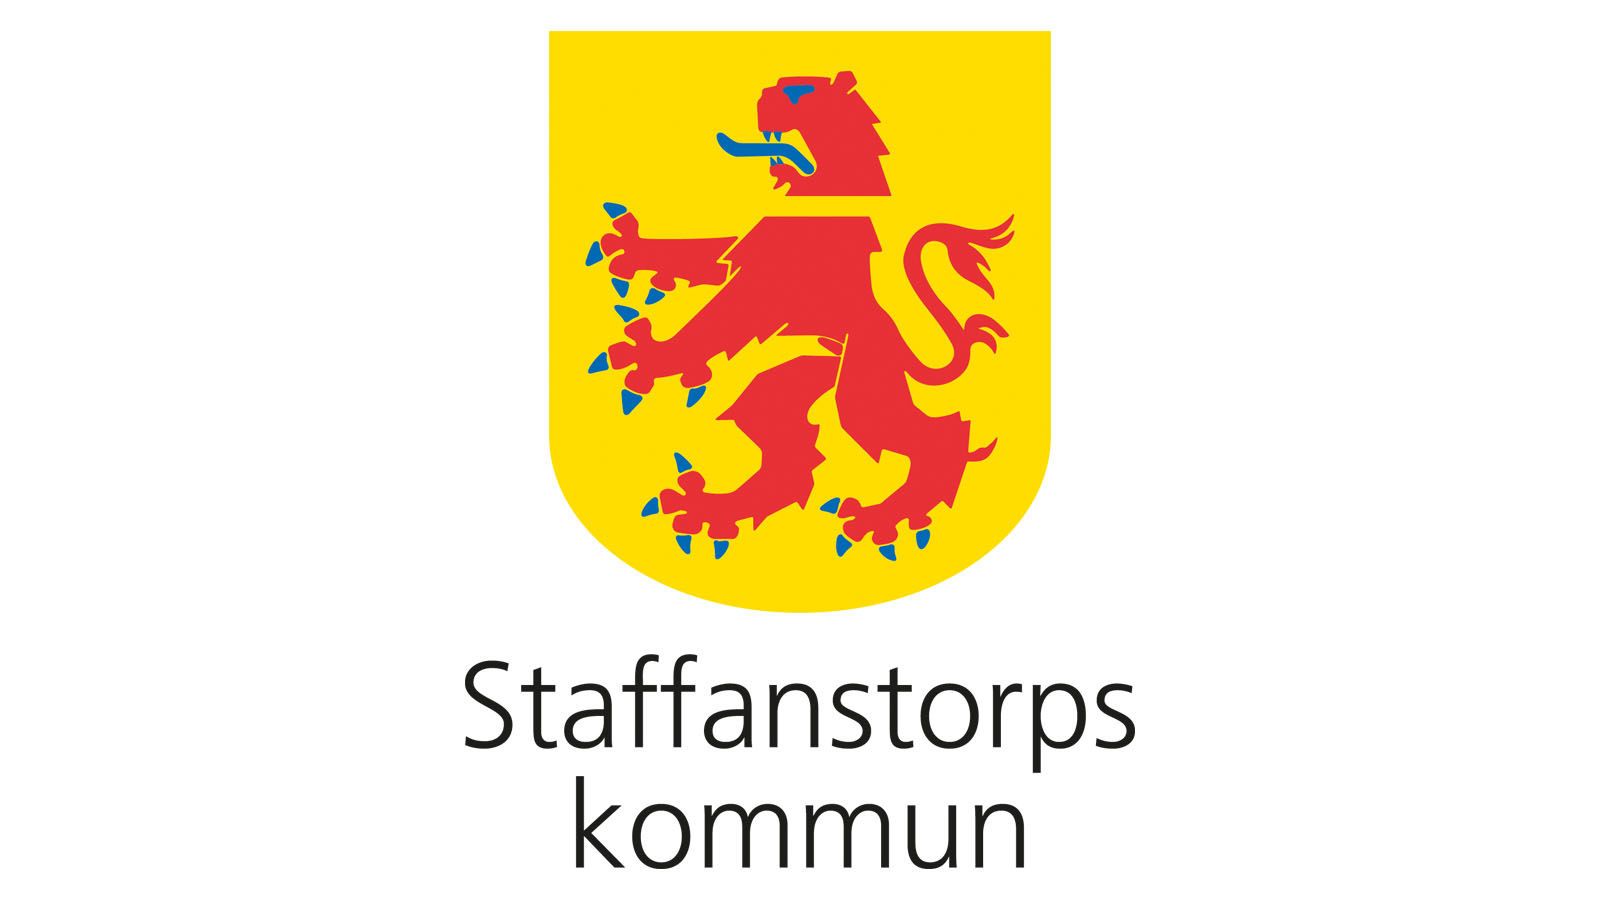 Staffanstorps kommuns logotyp.